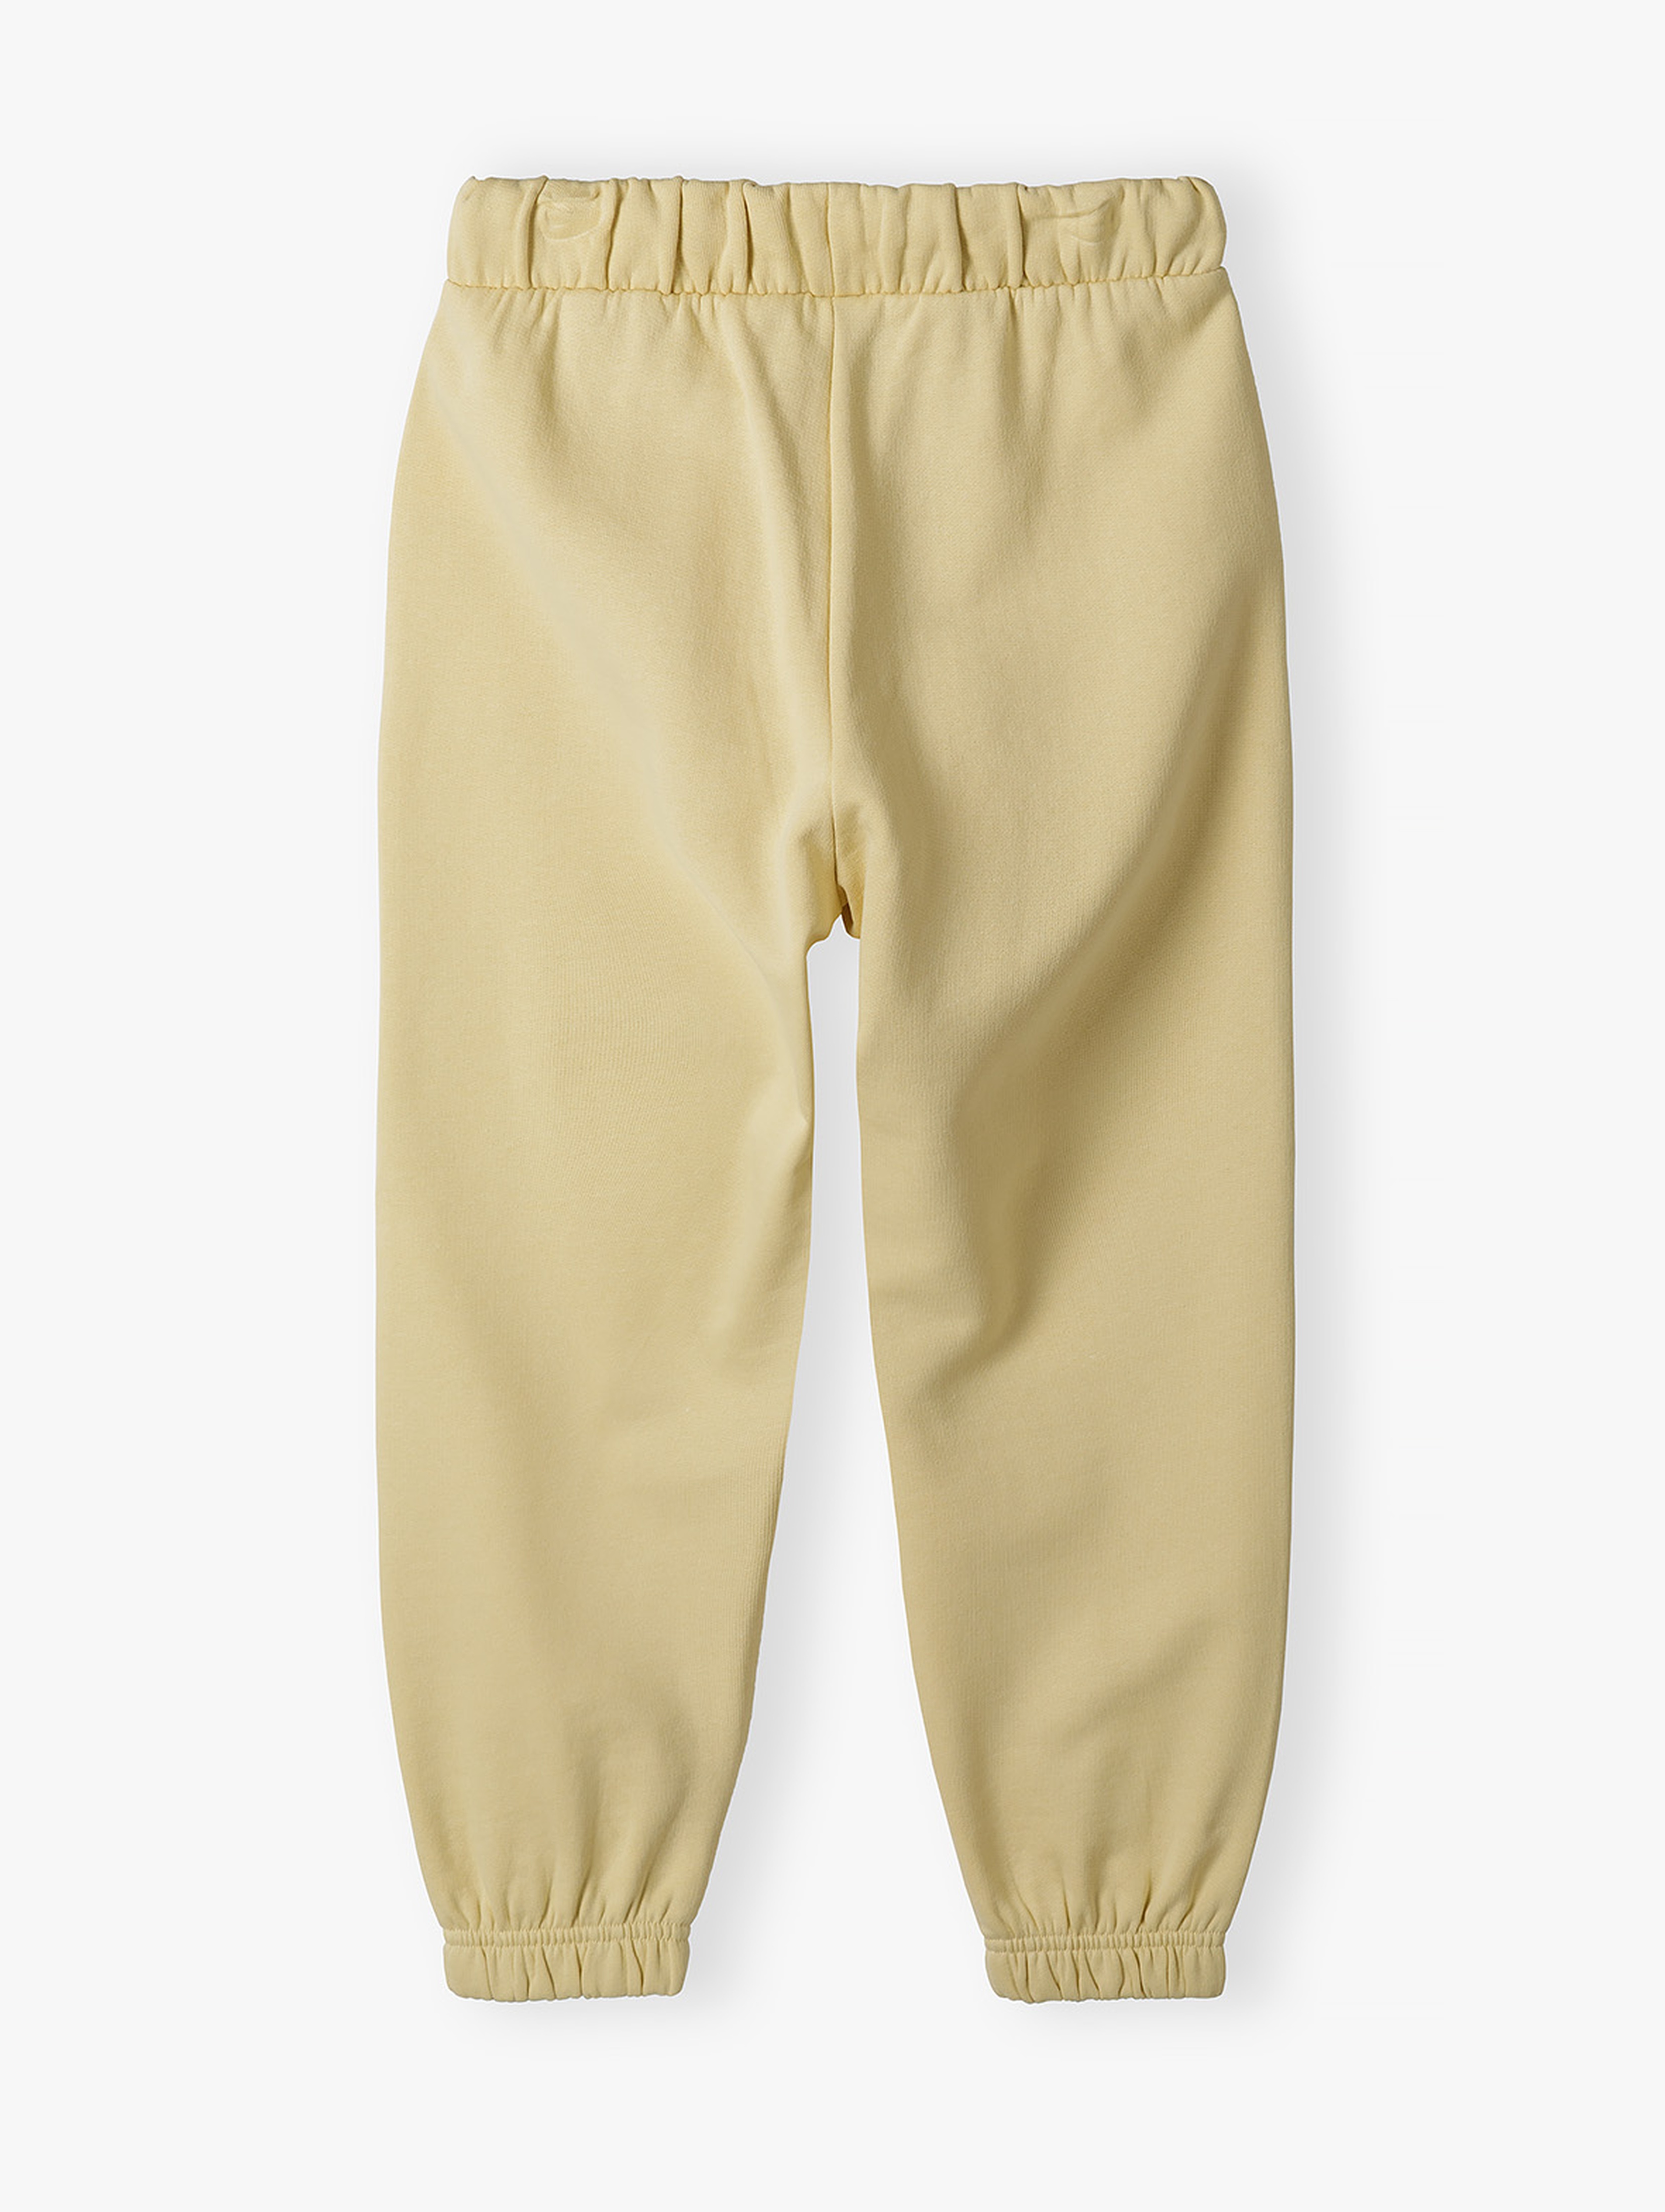 Luźne dresowe spodnie dla dziecka - Limited Edition